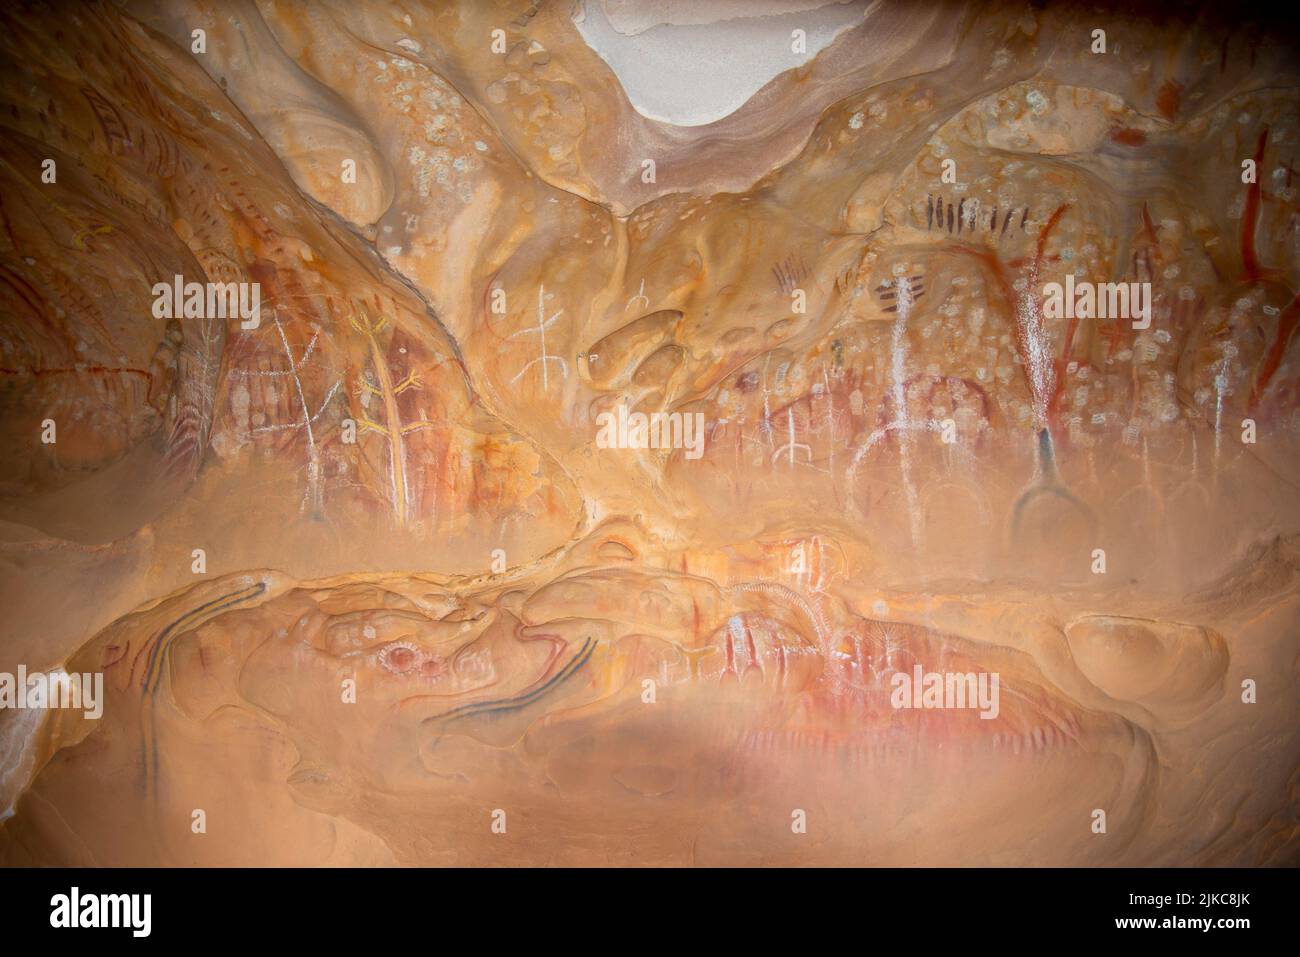 Pinturas prehistóricas en cuevas de Arkaroo Rock - Australia del Sur Foto de stock